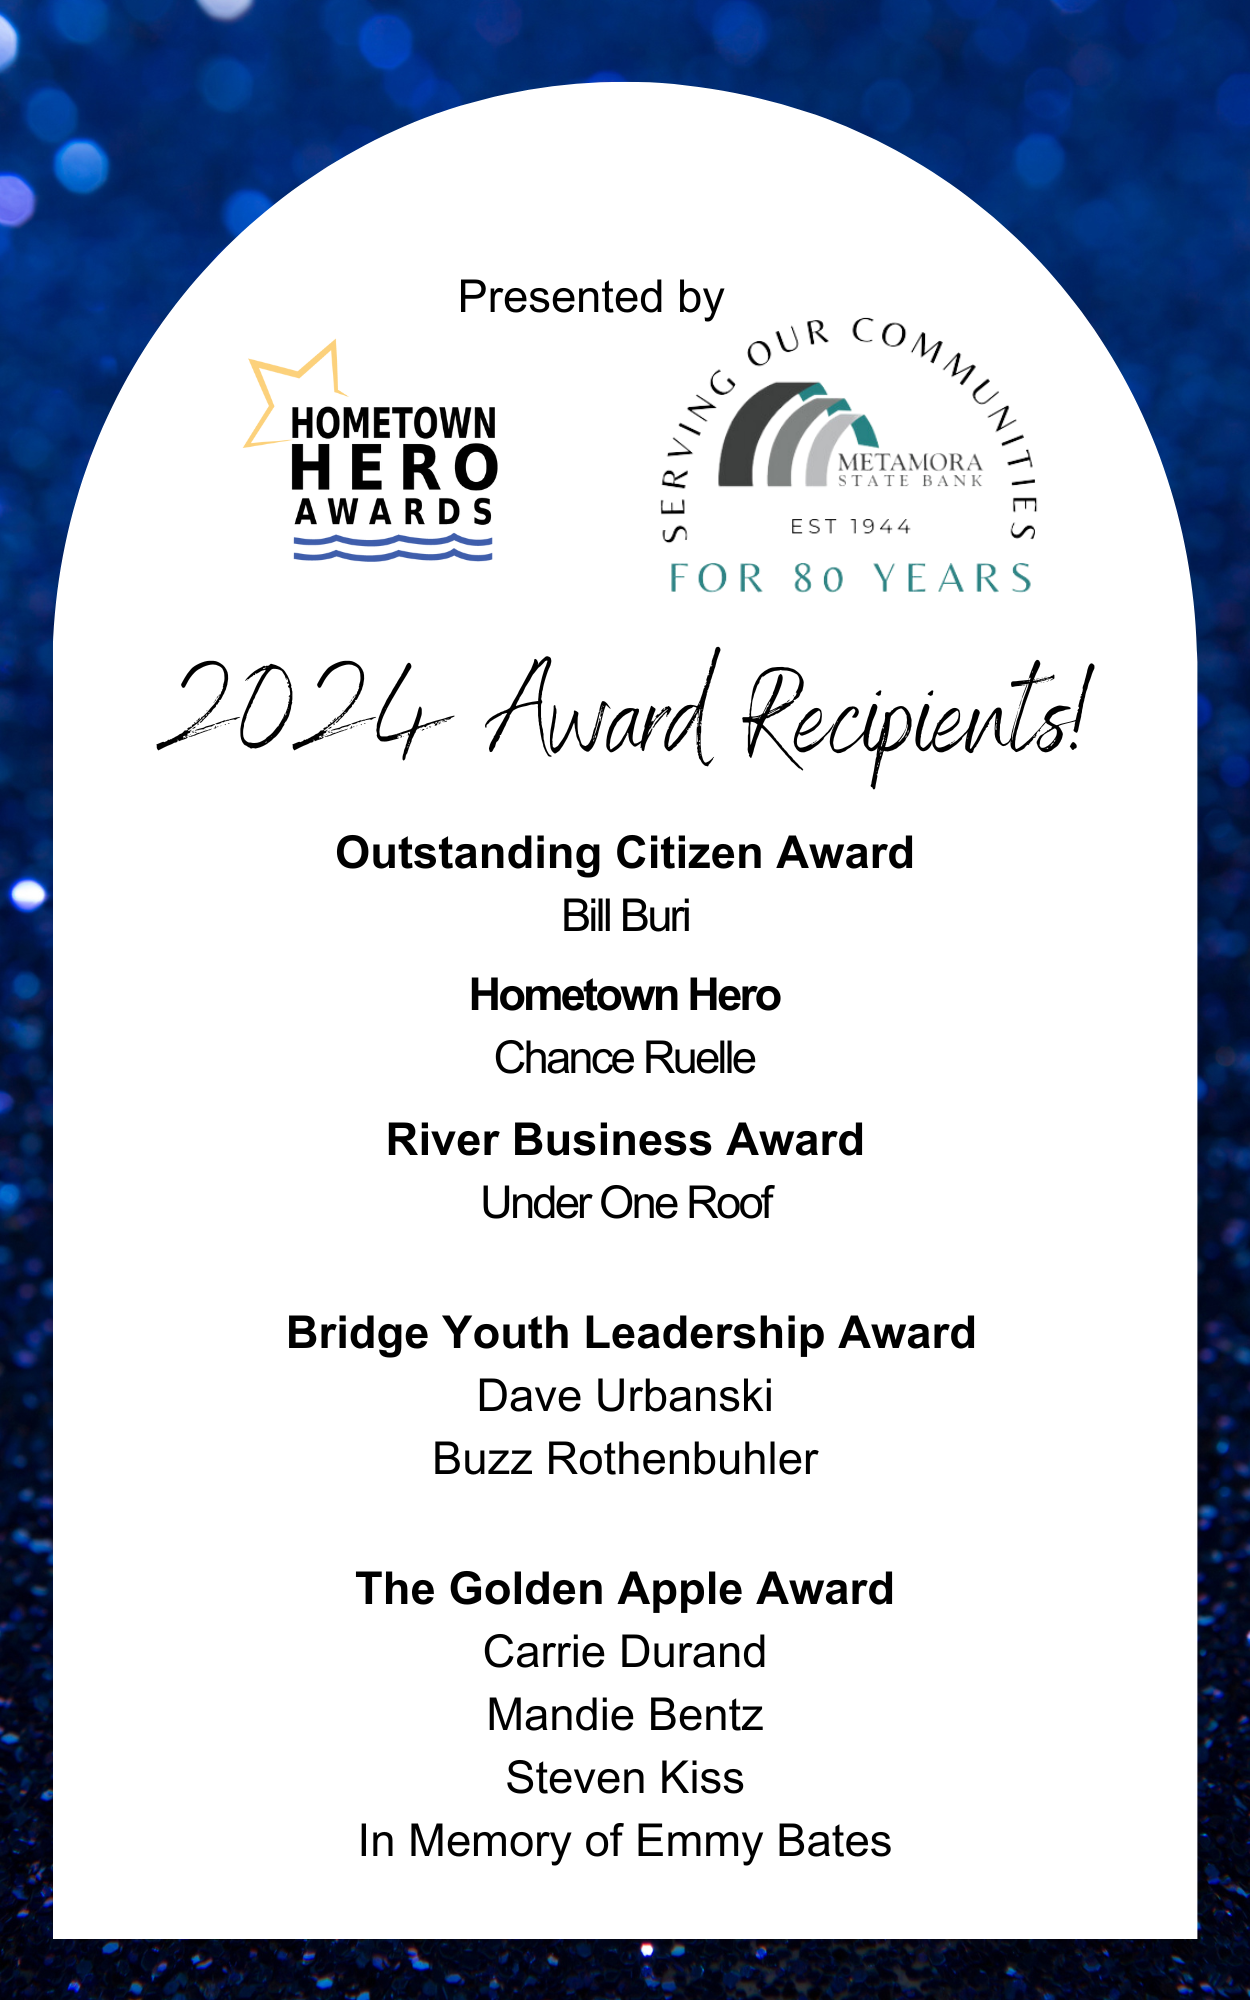 Hometown Hero Awards logo